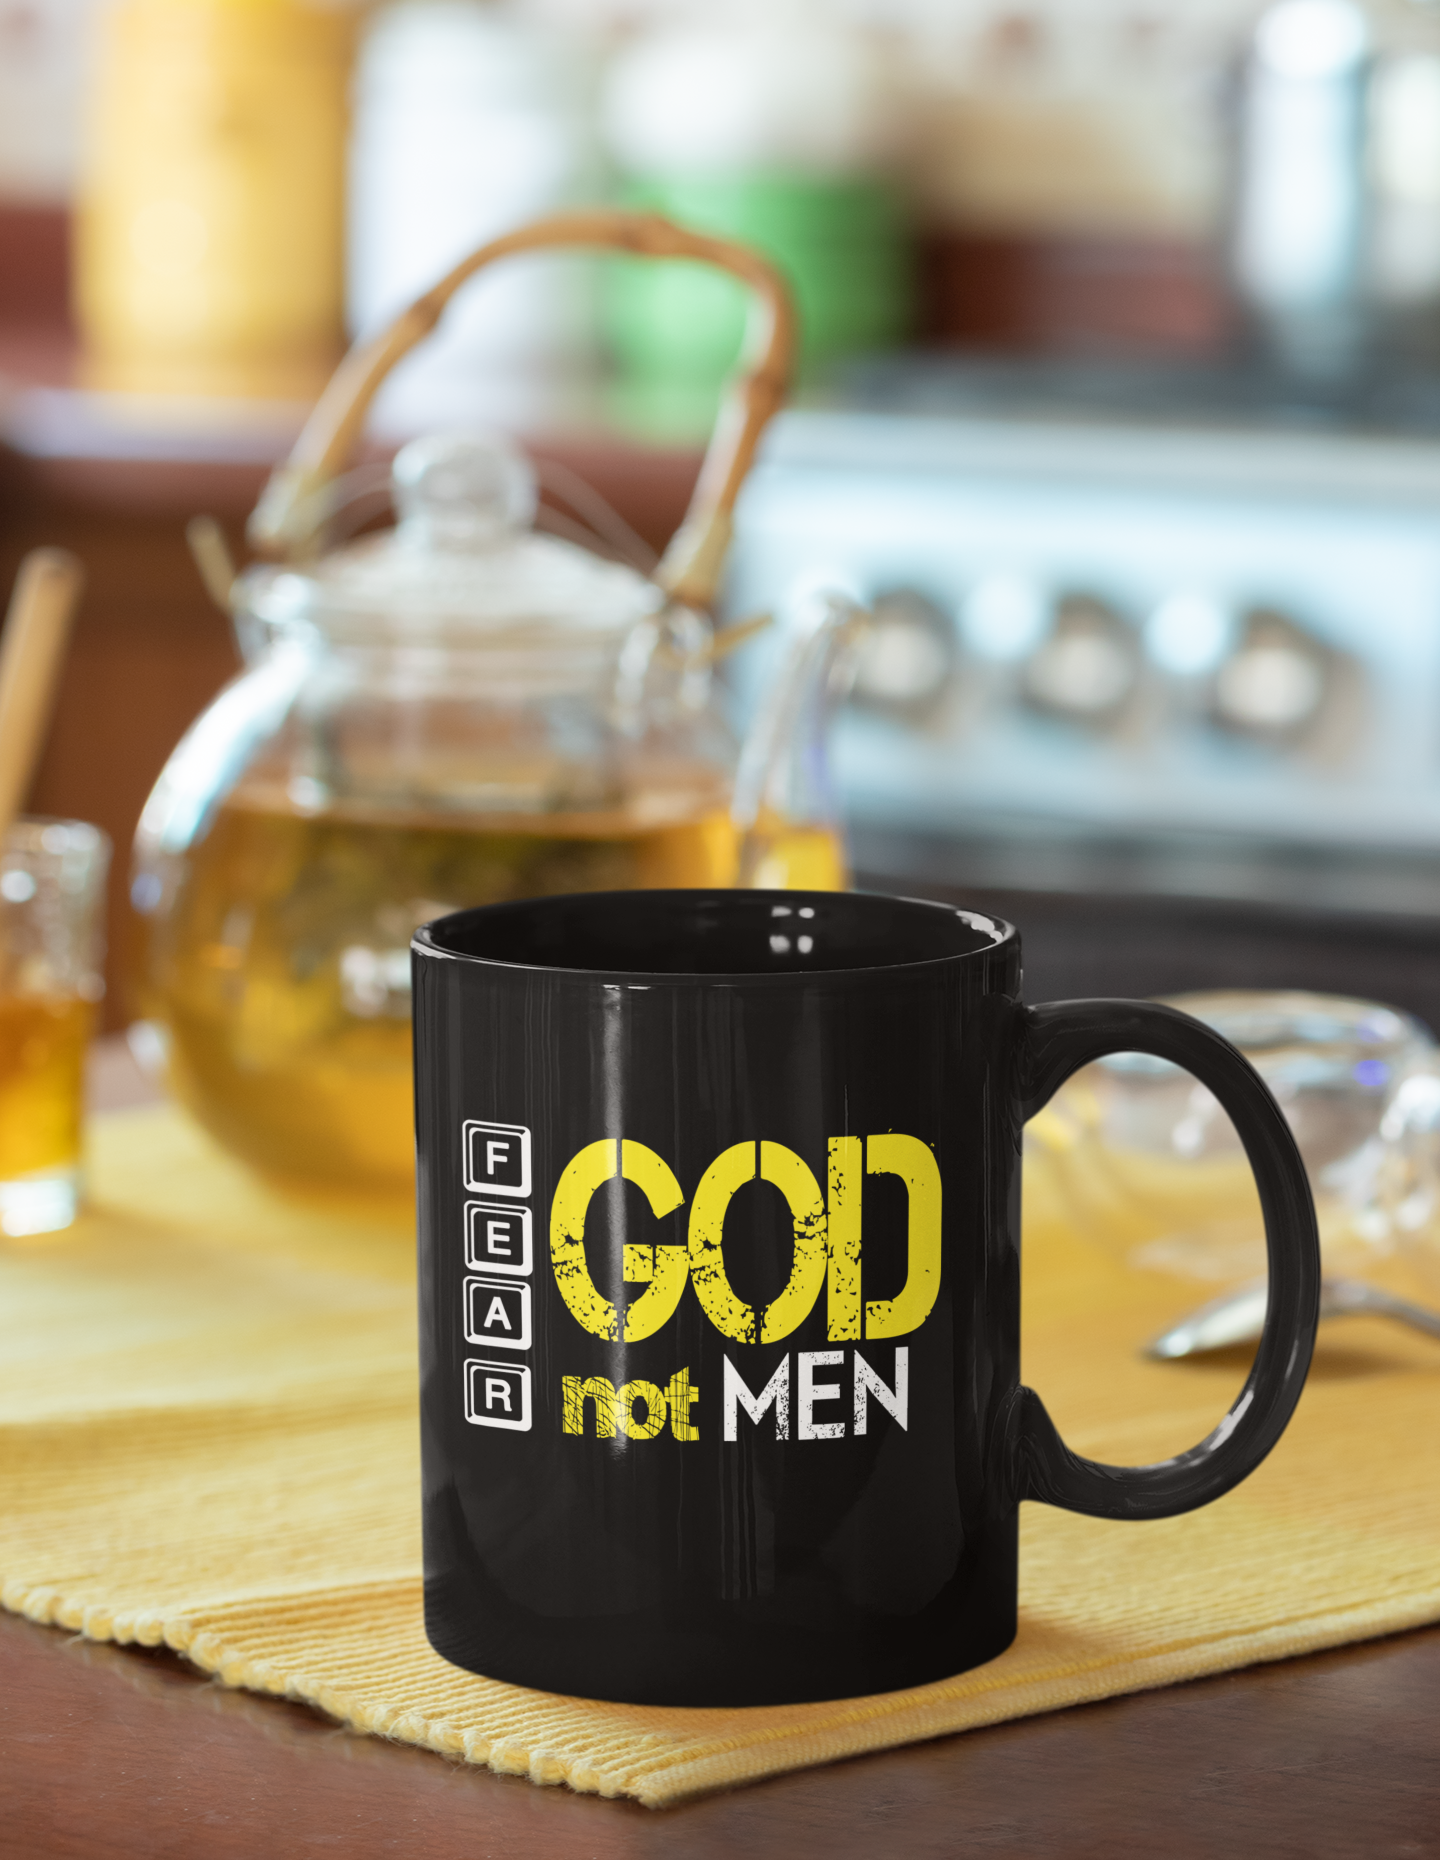 Fear God not men - Coffee Mugs